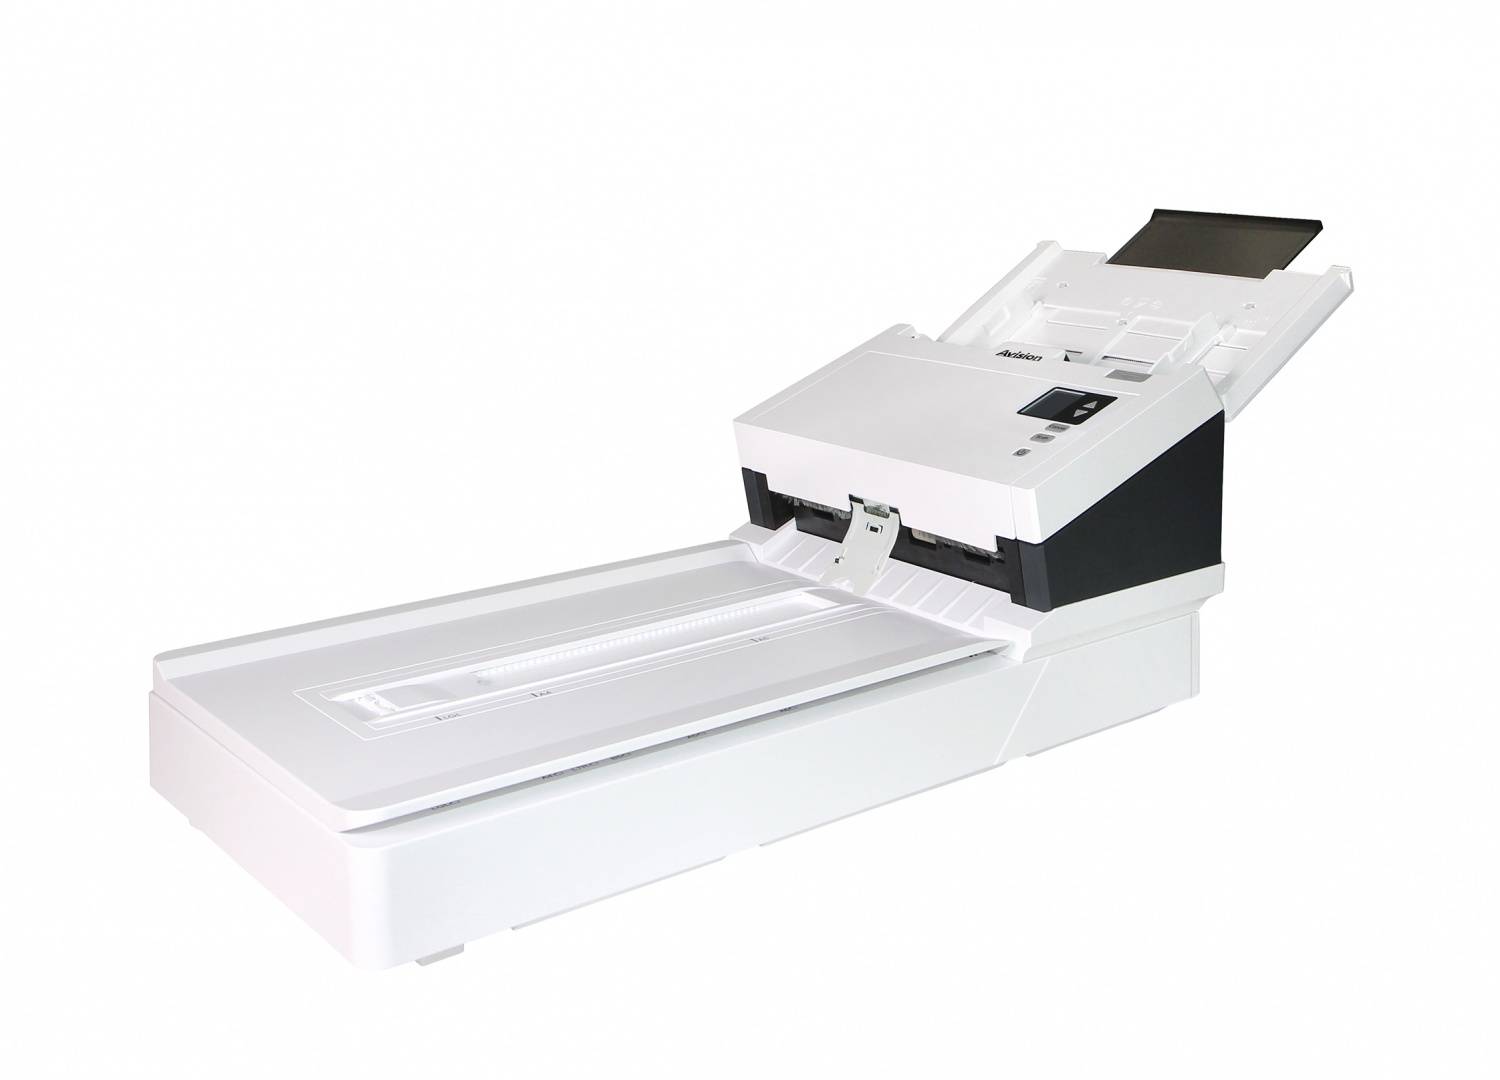 Сканер Avision AD345GF с планшетом. Формат A4, скорость 60 стр./мин., емкость автоподатчика 100 листов, дуплекс, интерфейс: USB3.1